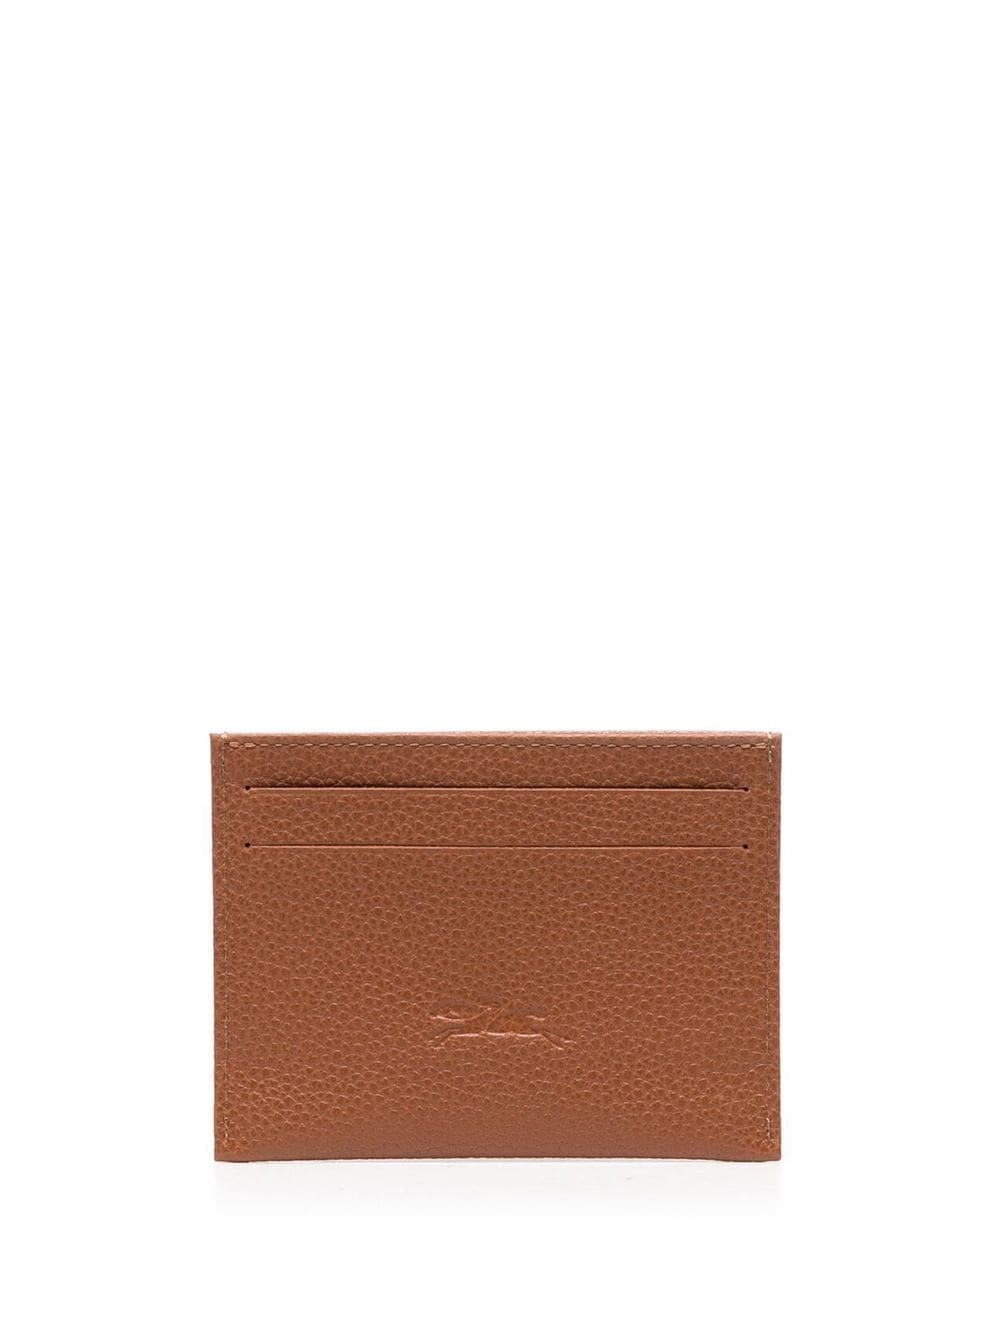 Le Foulonné leather cardholder - 2